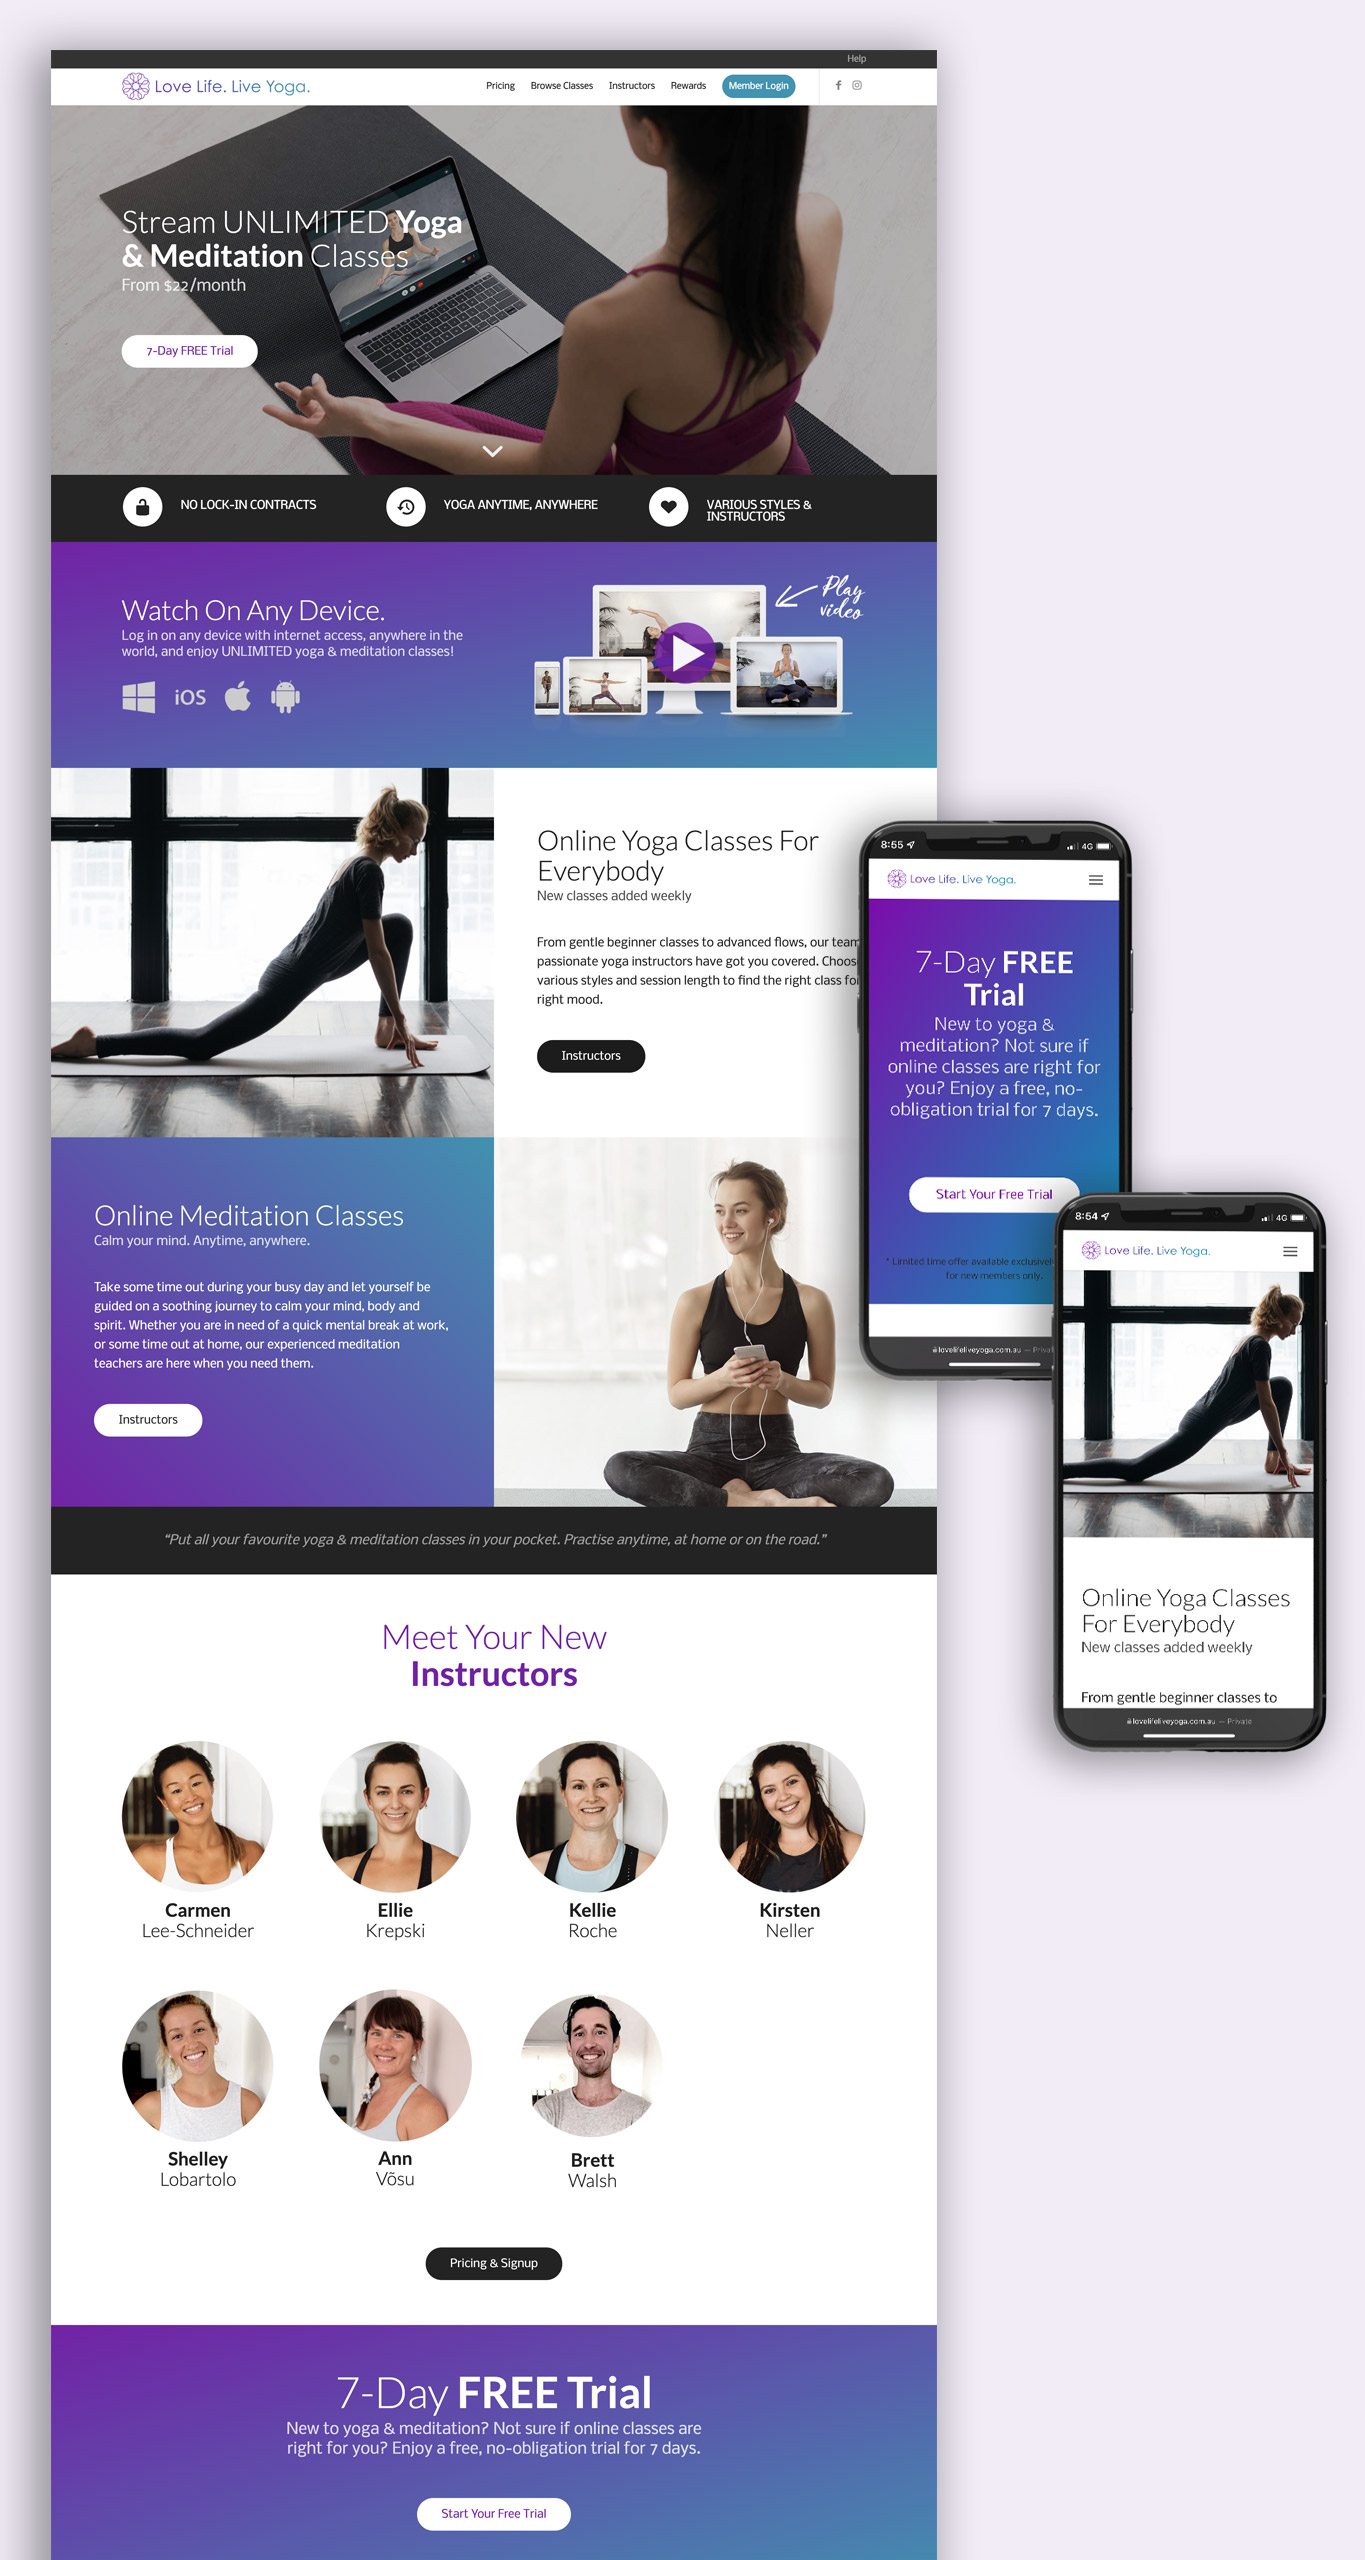 Website Design for Online Yoga Platform - Brisbane Digital Marketing Agency Done Digital